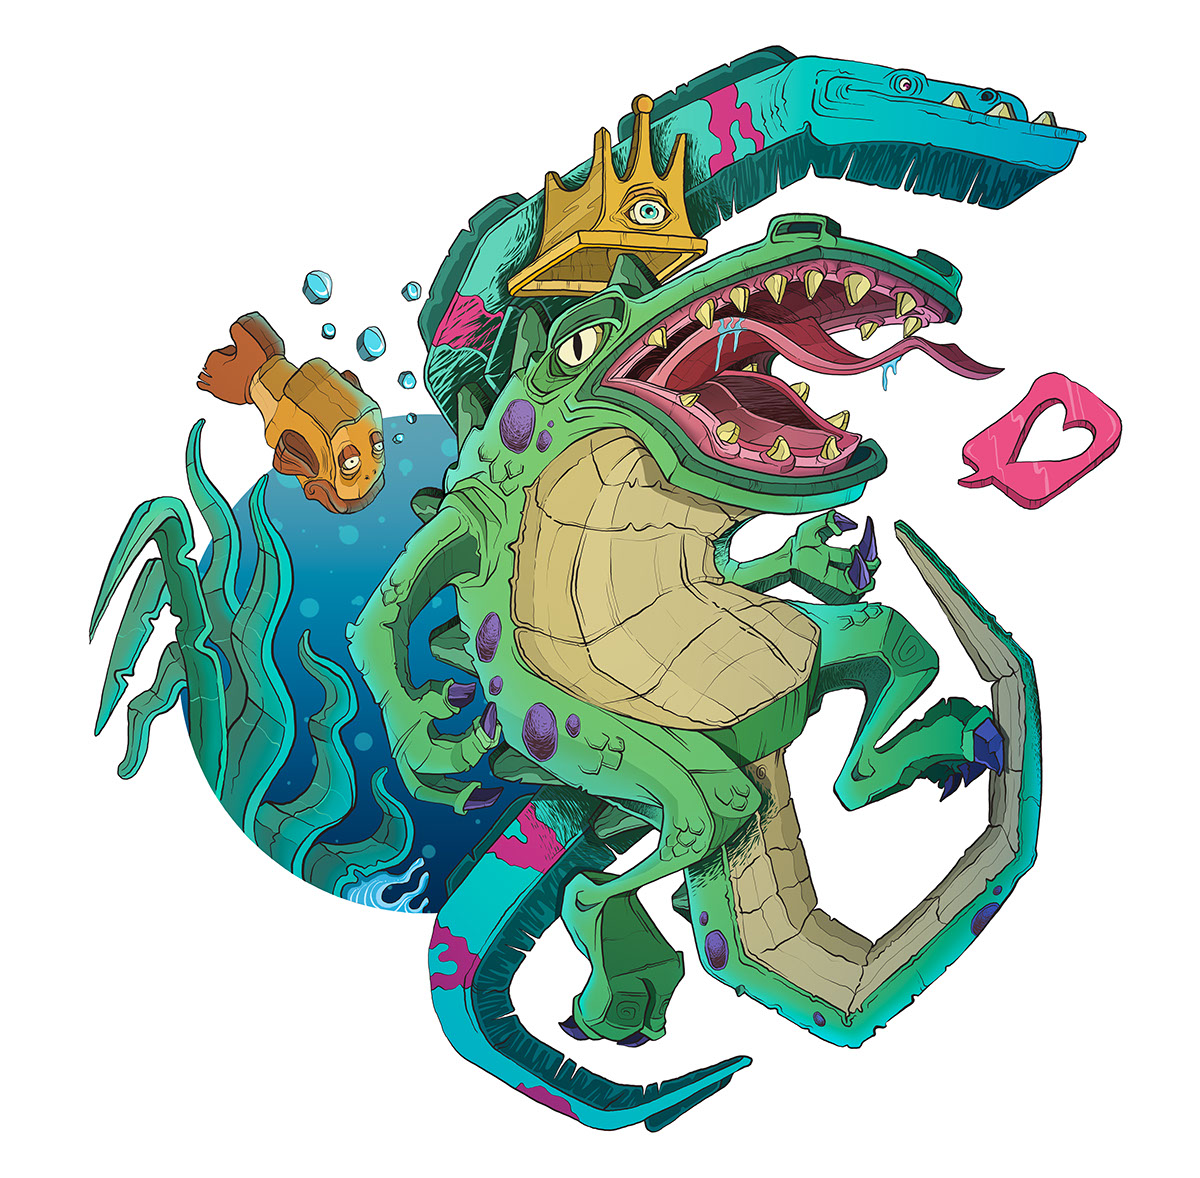 EL TODOPODEROSO COCODRILO illuminati cocodrilo reptiliano pescadodo Anguila El Ilustrador Behance student show Wacom Cintiq